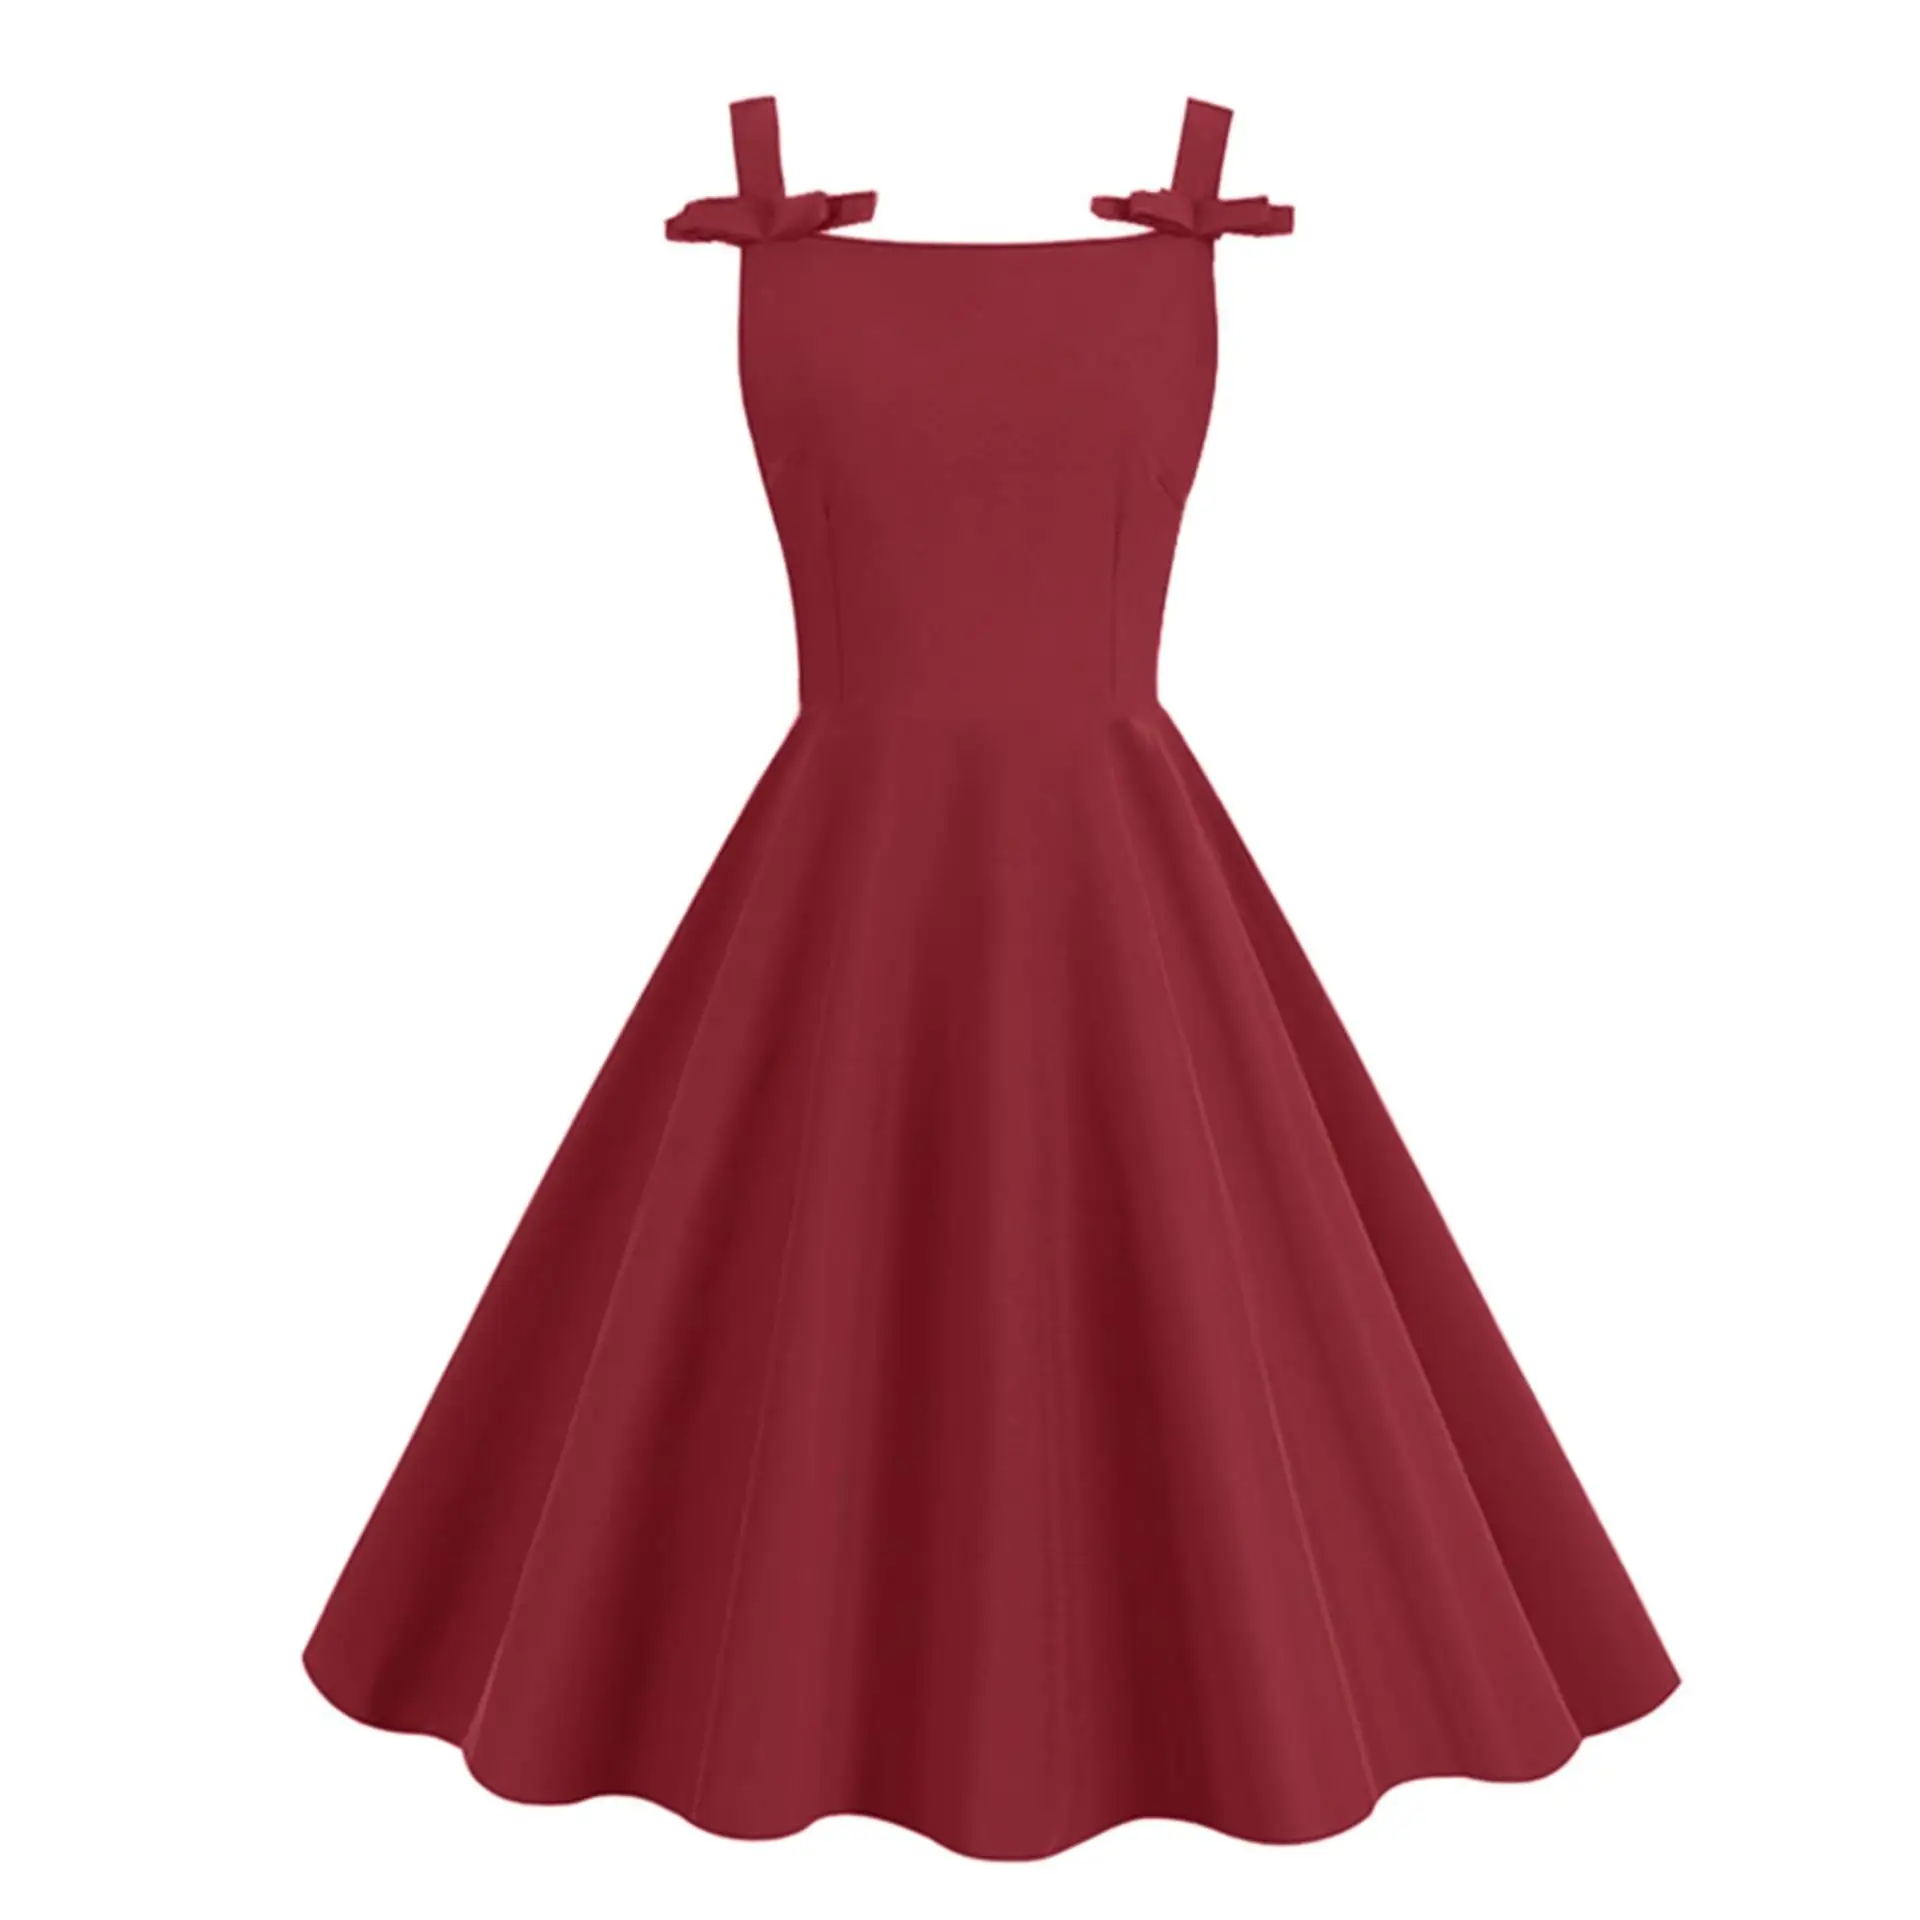 Spaghetti Strap Bow Vintage sólido rojo vestidos de fiesta Kawaii mujeres 50s Pinup cumpleaños fiesta ropa espalda descubierta Swing vestido SR1333